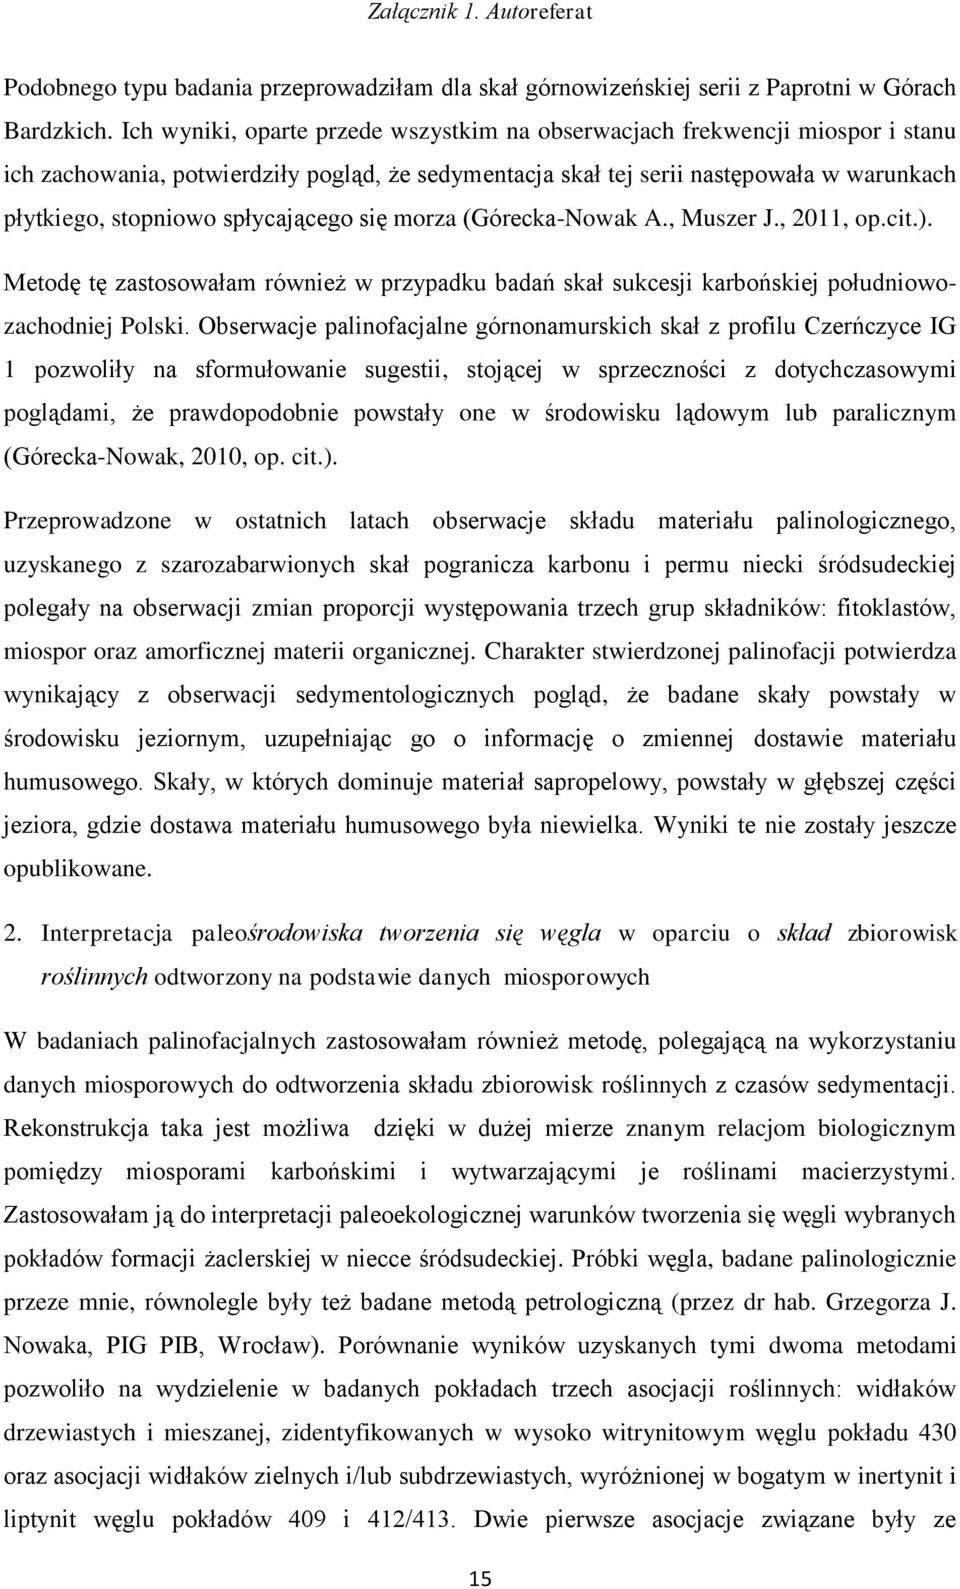 spłycającego się morza (Górecka-Nowak A., Muszer J., 2011, op.cit.). Metodę tę zastosowałam również w przypadku badań skał sukcesji karbońskiej południowozachodniej Polski.